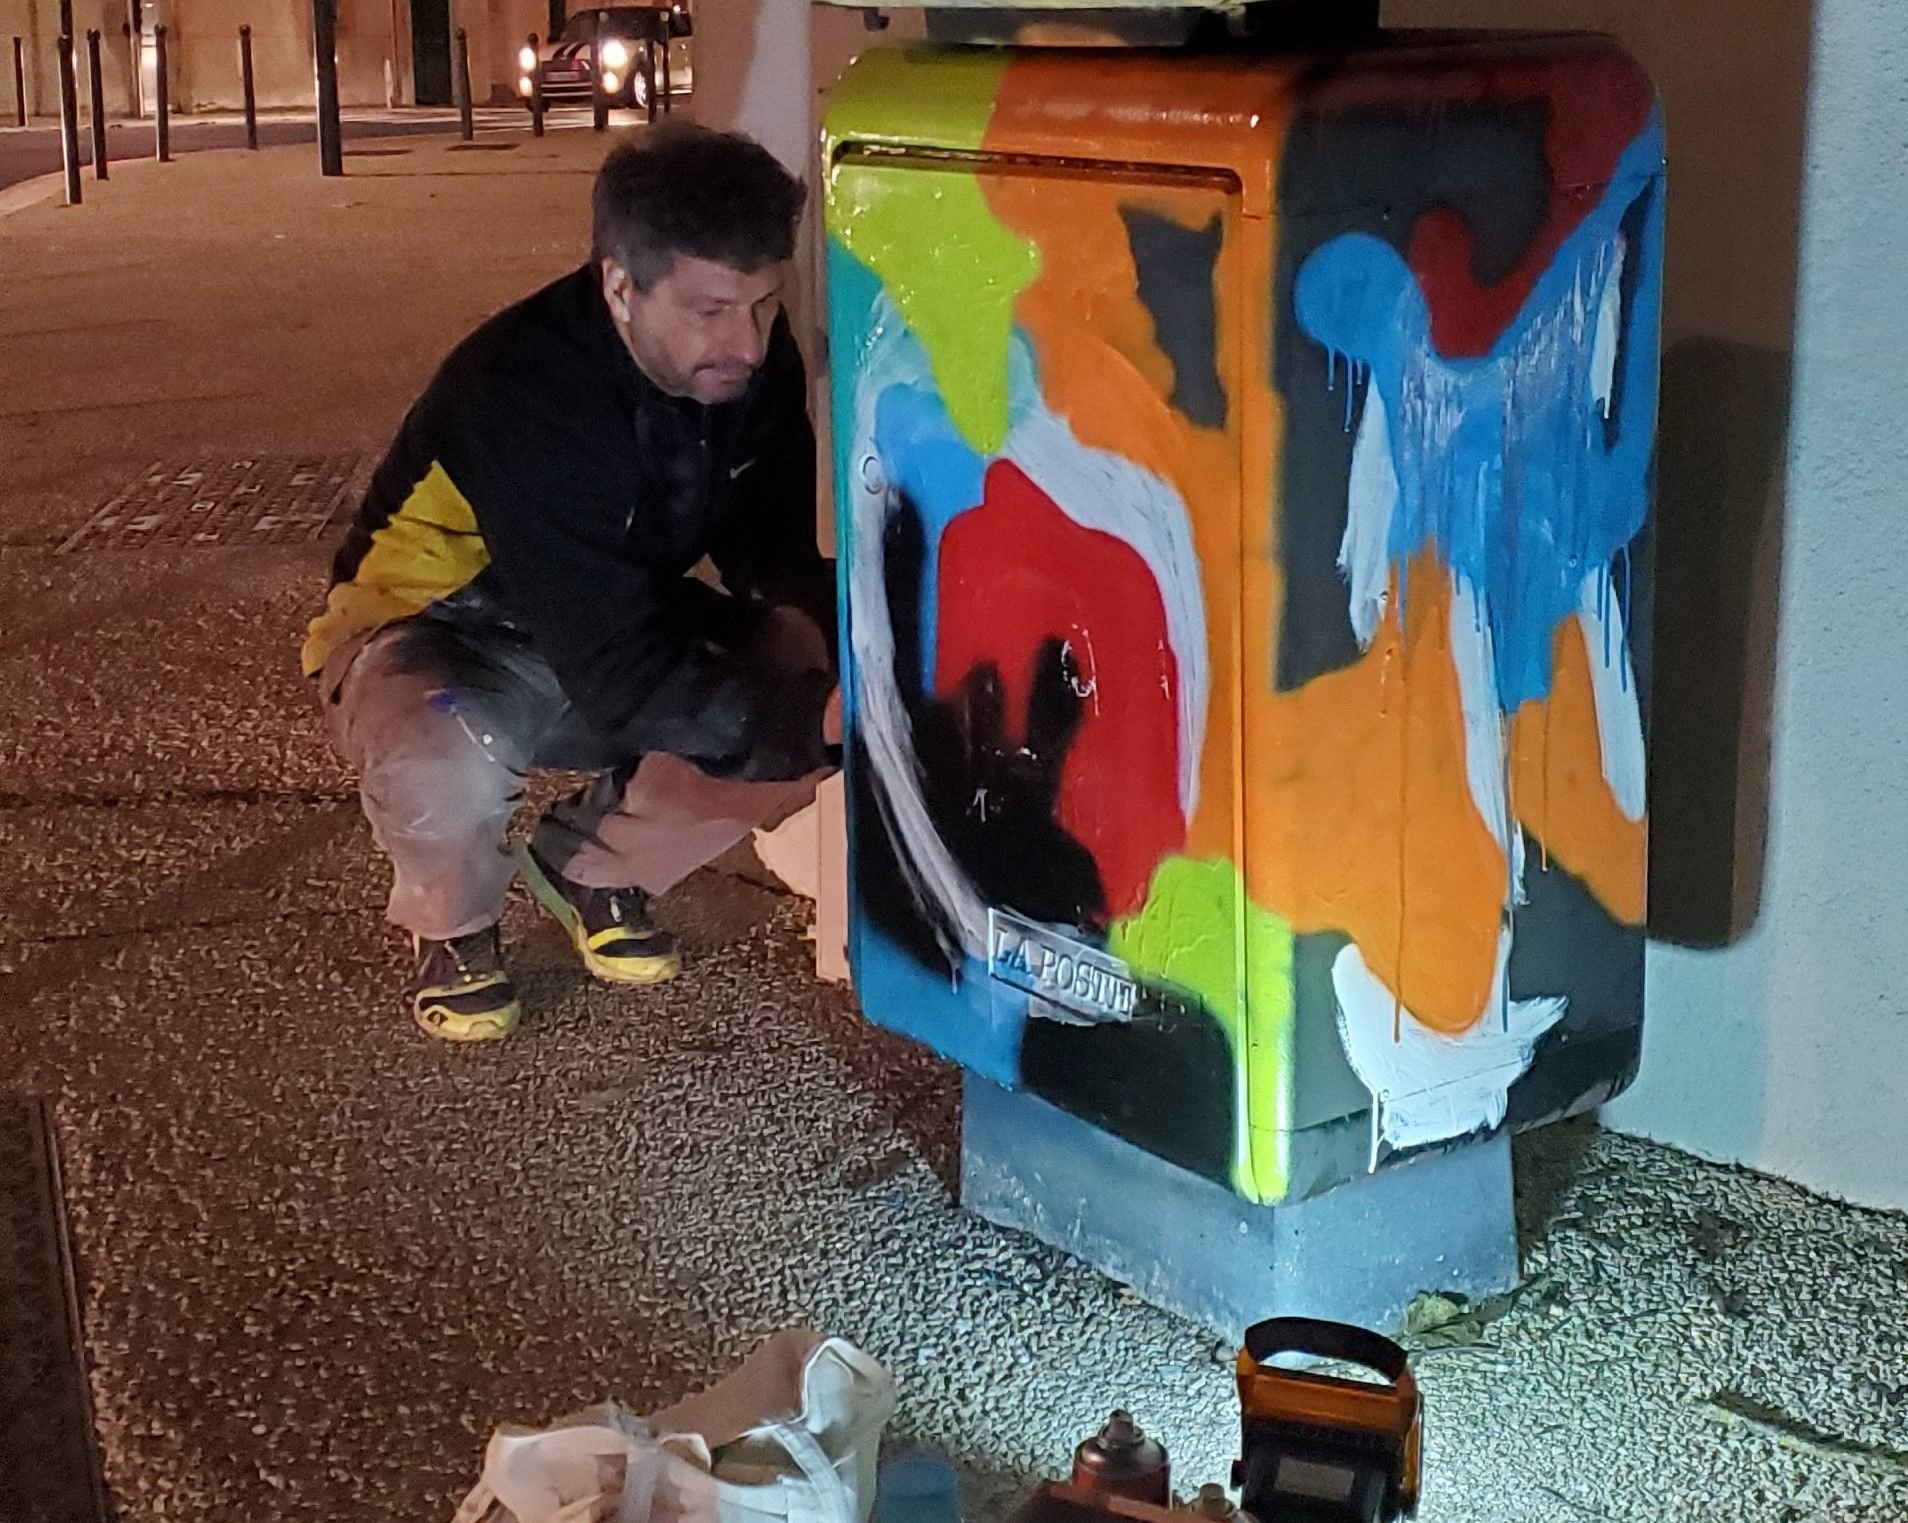 Le sculpteur et peintre orléanais Pascal Nottin rend ici hommage à Jean-Michel Basquiat en esquissant sur une boîte postale une œuvre... qui sera plus tard recouverte par les services de la mairie d'Orléans. LP/Elodie Cerqueira